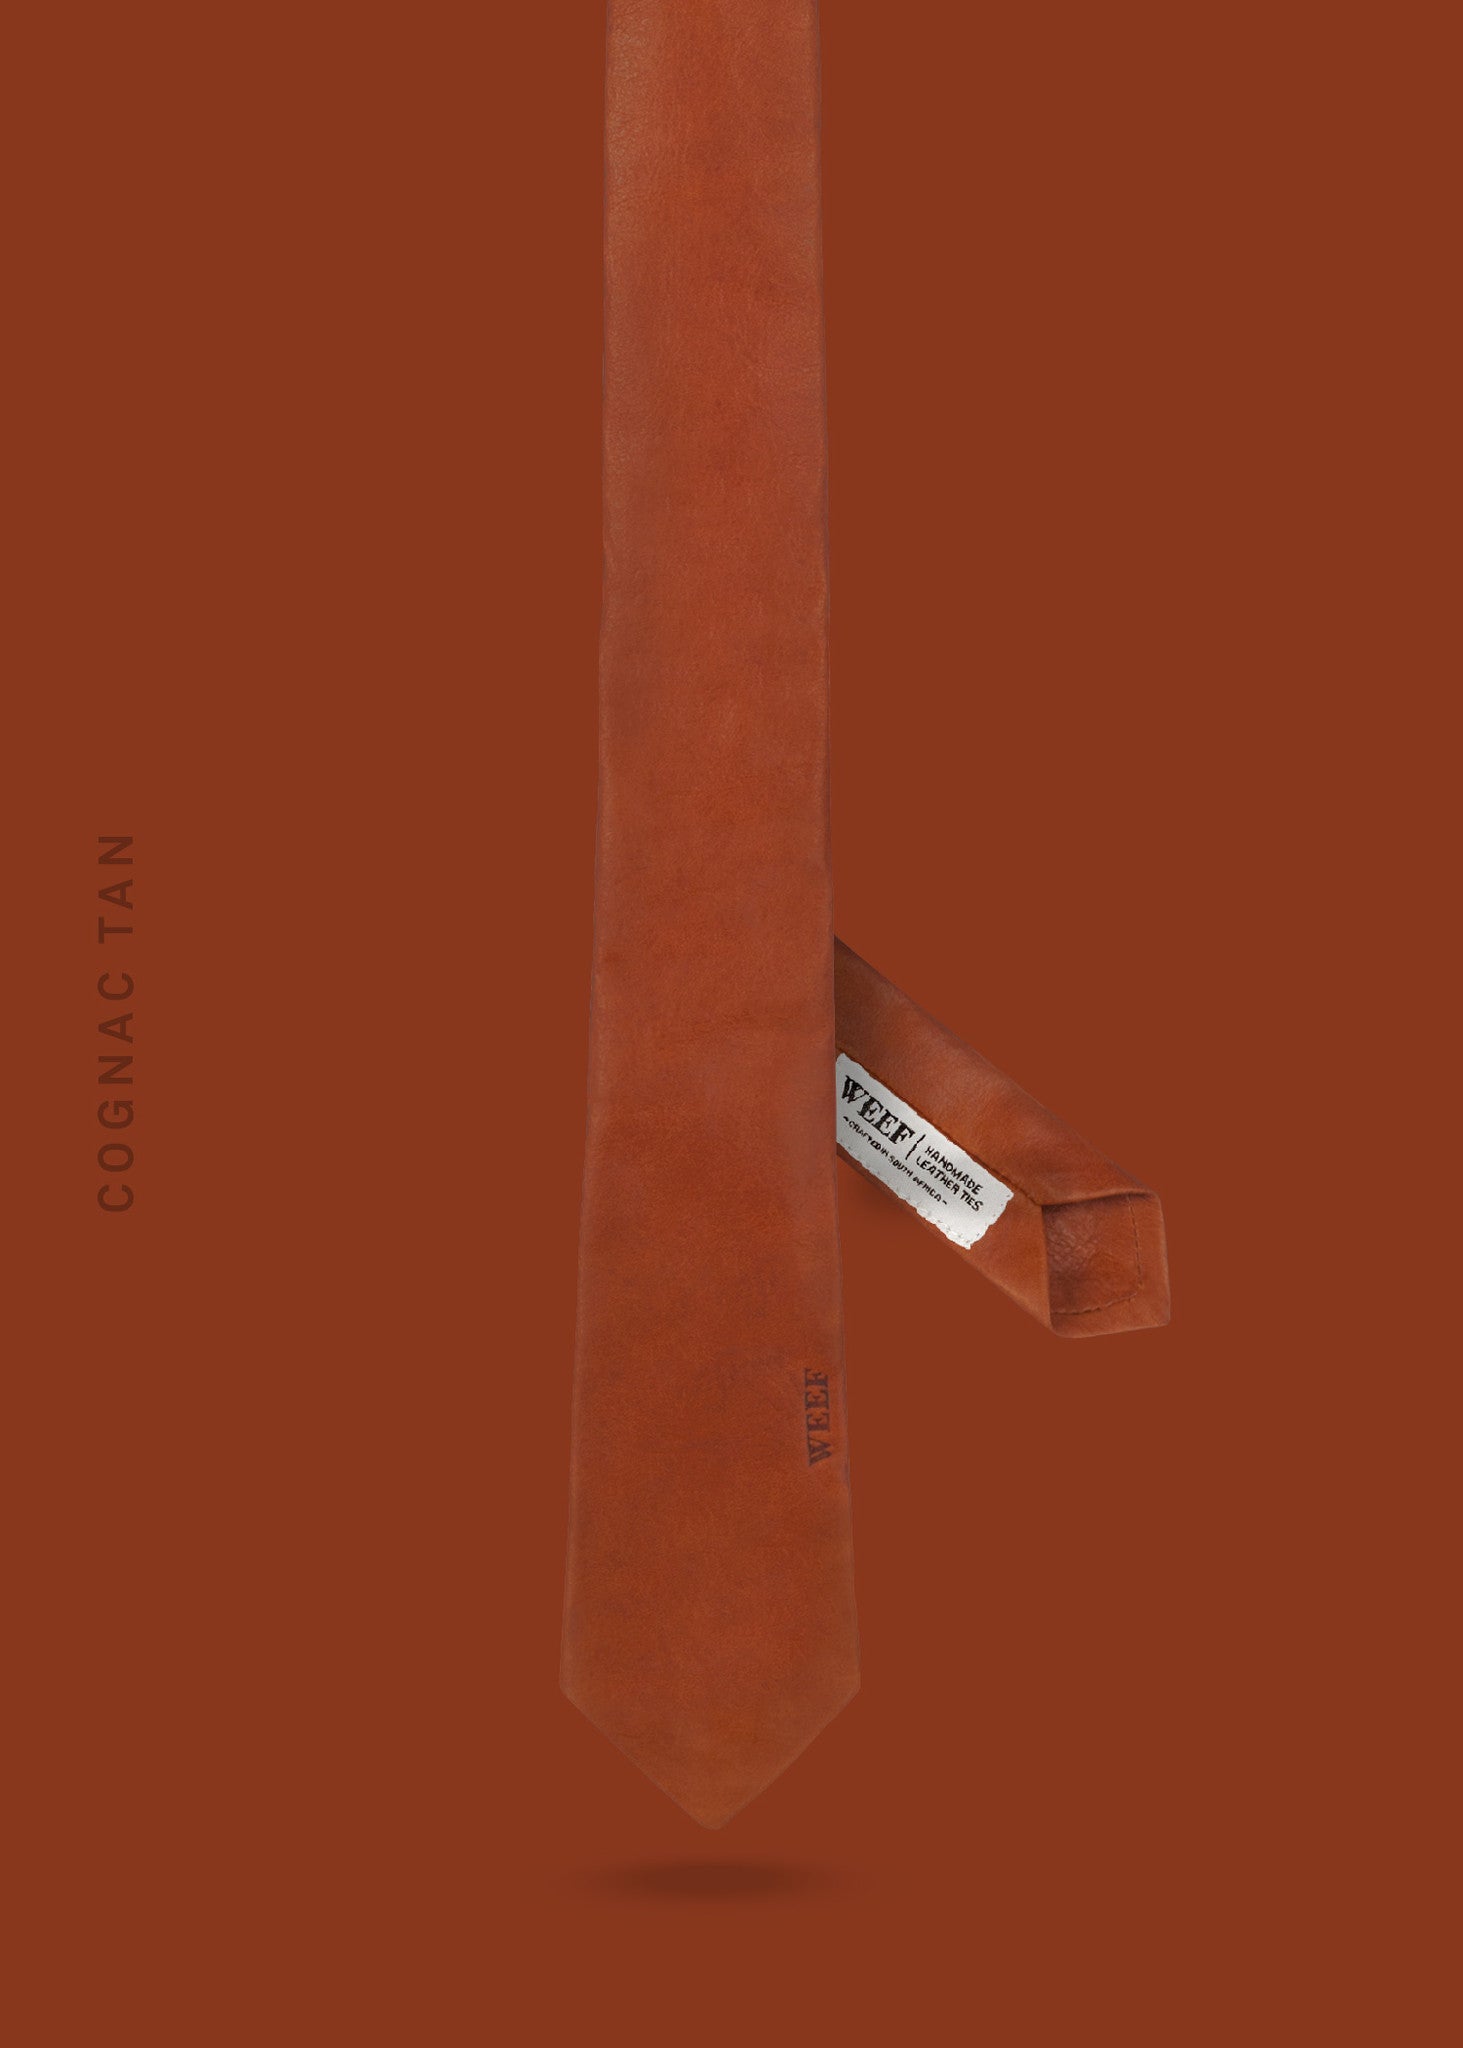 Skinny Tie No.1 – Cognac Tan